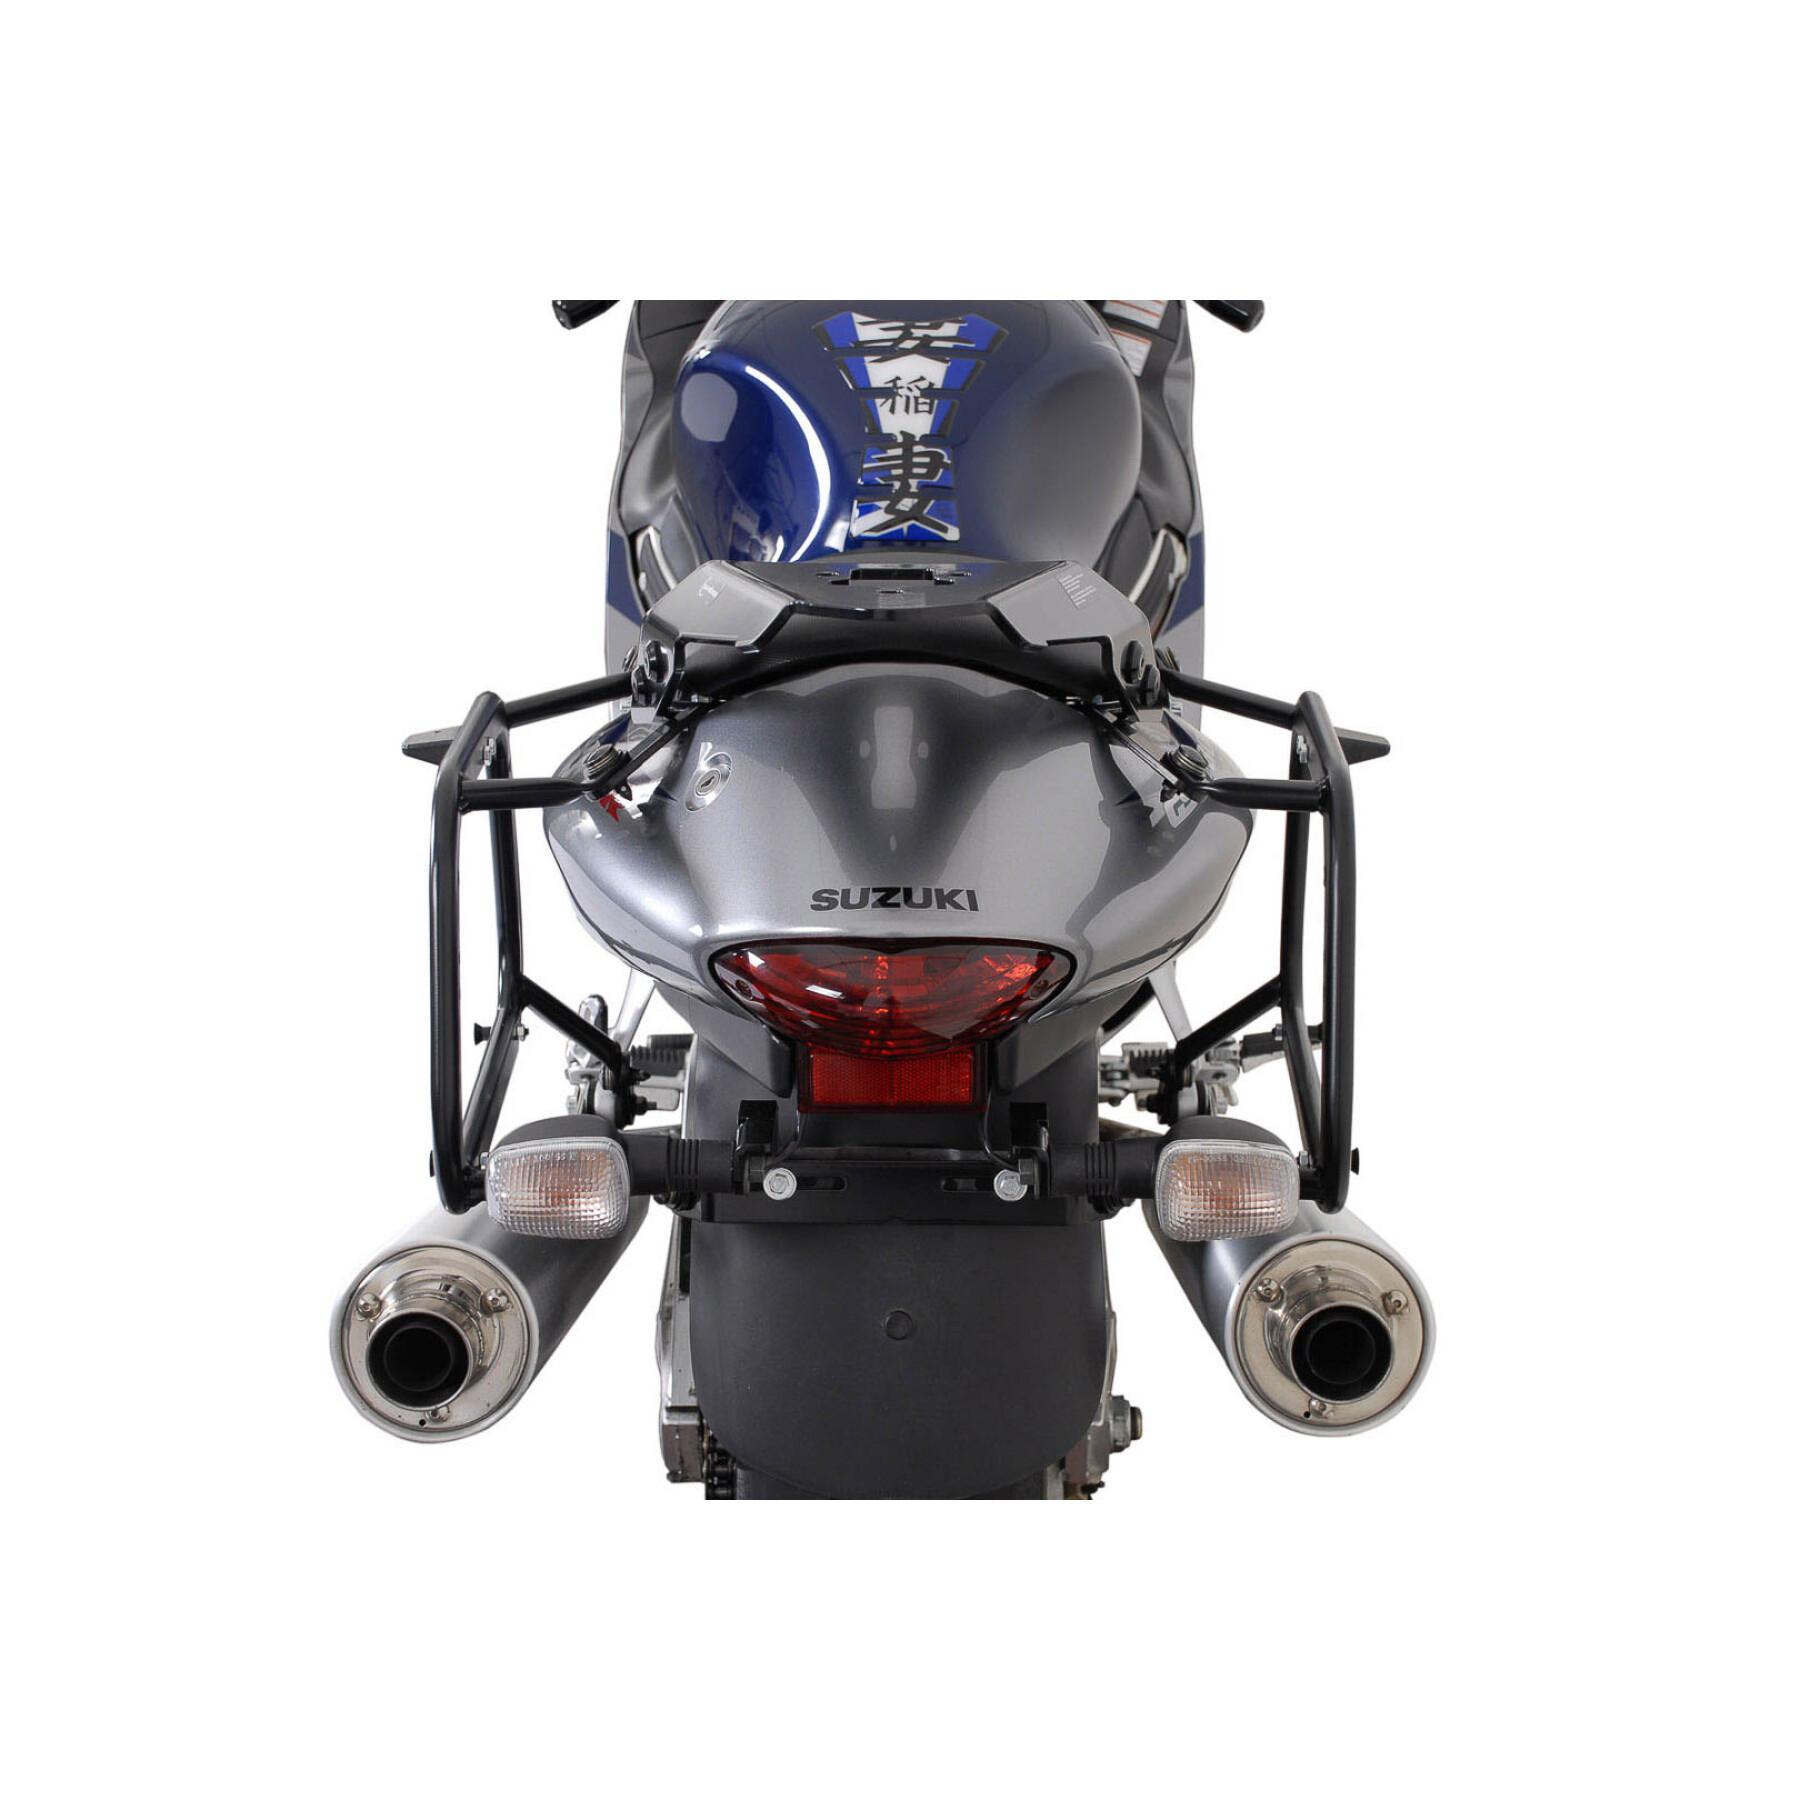 Wspornik kufra bocznego motocykla Sw-Motech Evo. Suzuki Gsx 1300 R Hayabusa (99-07)